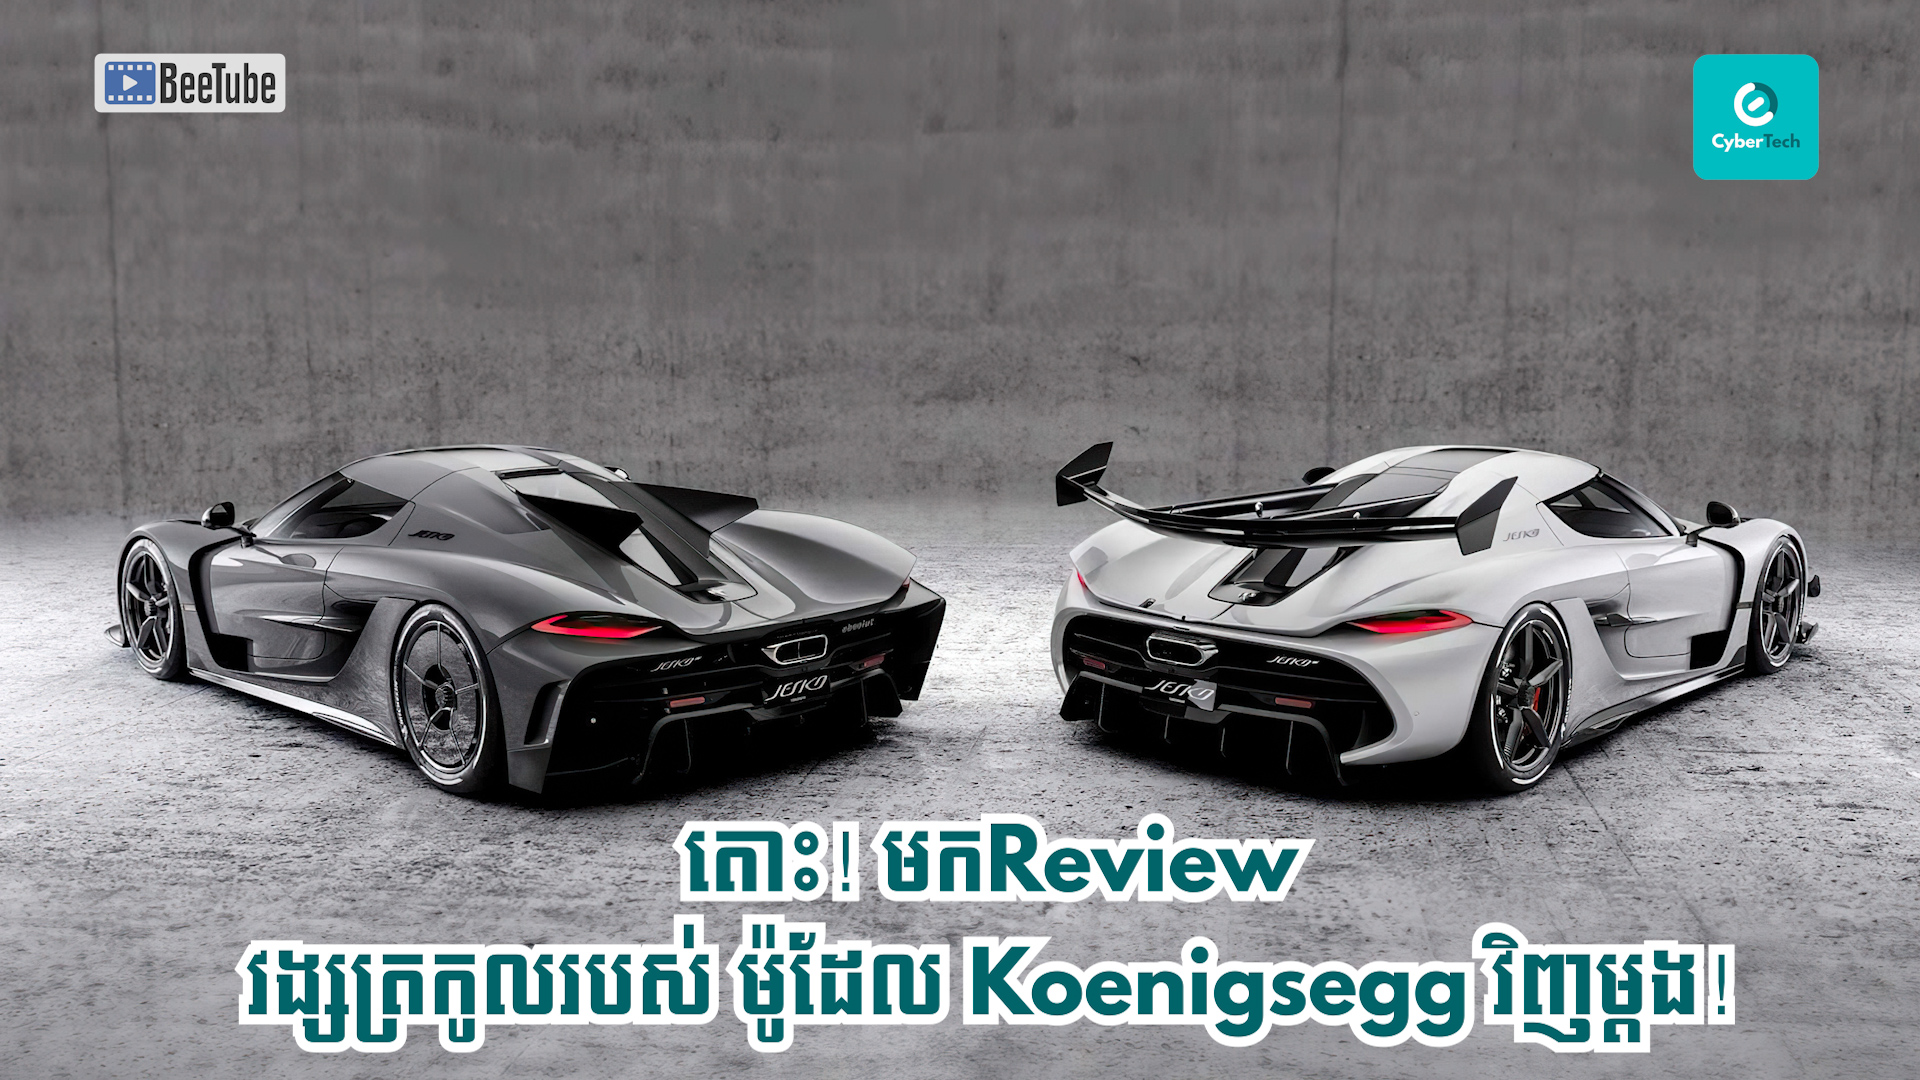 តោះ! មក​ Review វង្សត្រកូលរបស់ ម៉ូដែល Koenigsegg វិញម្តង! 